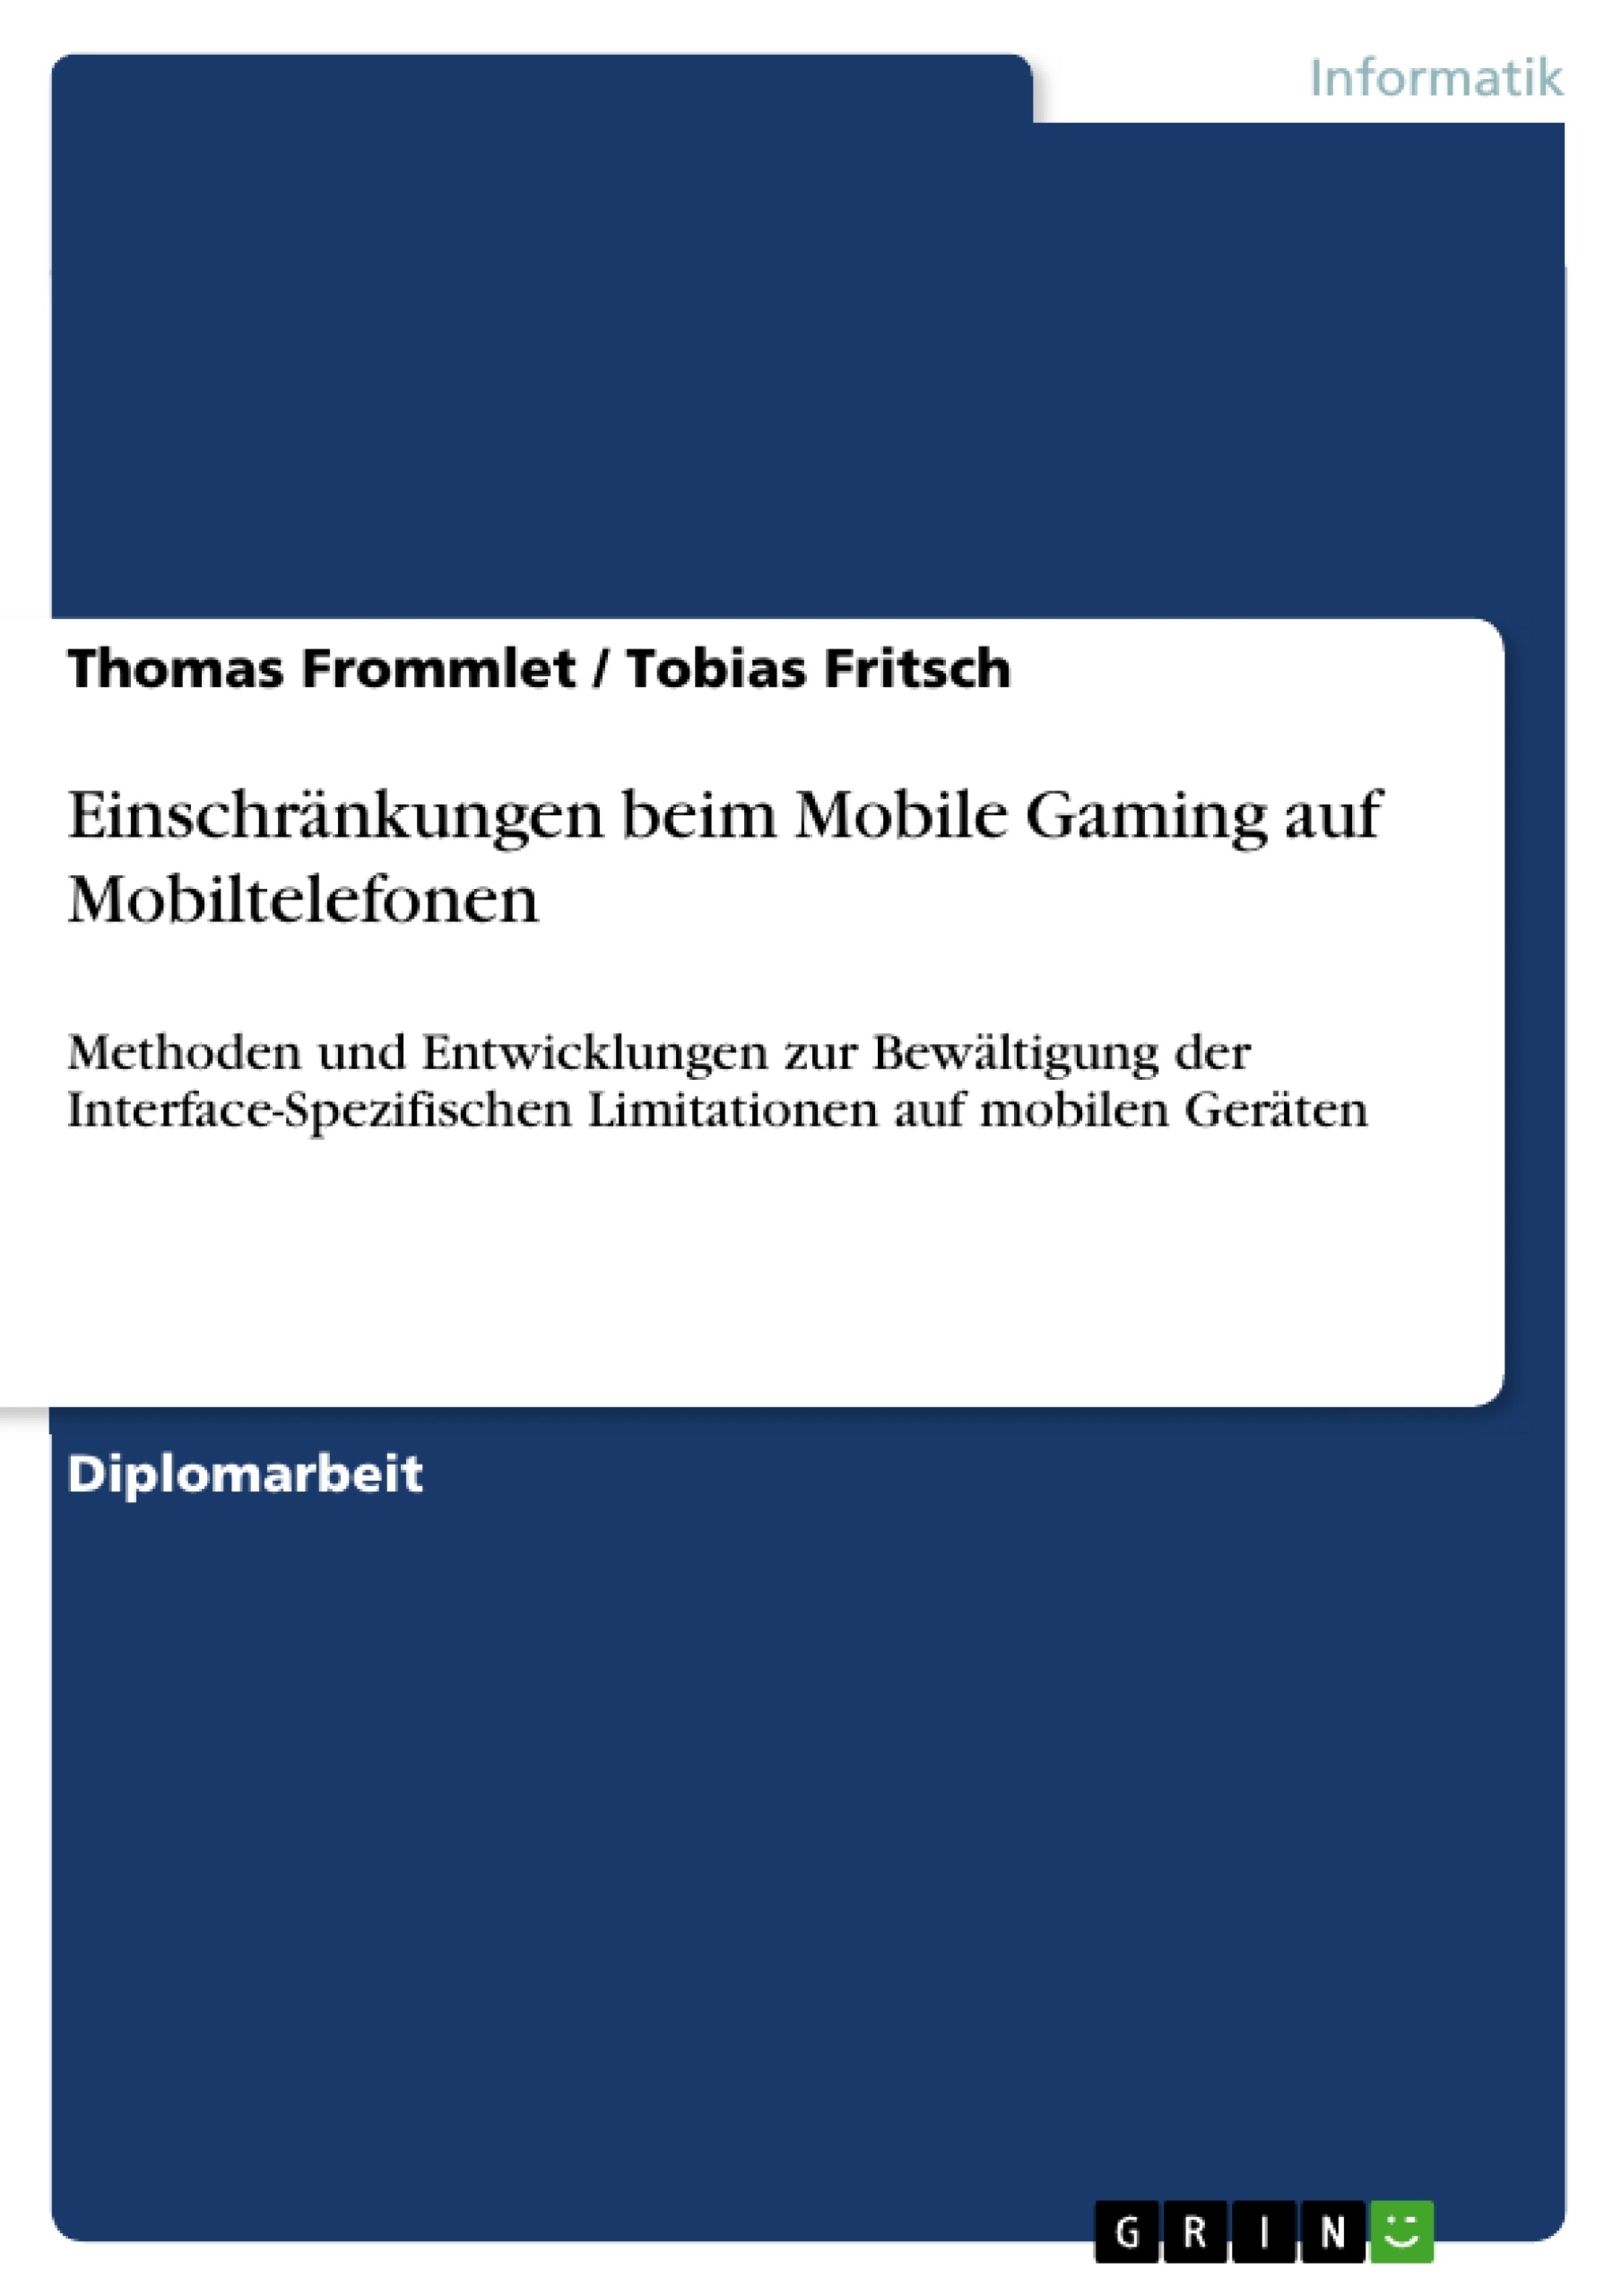 Título: Einschränkungen beim Mobile Gaming auf Mobiltelefonen